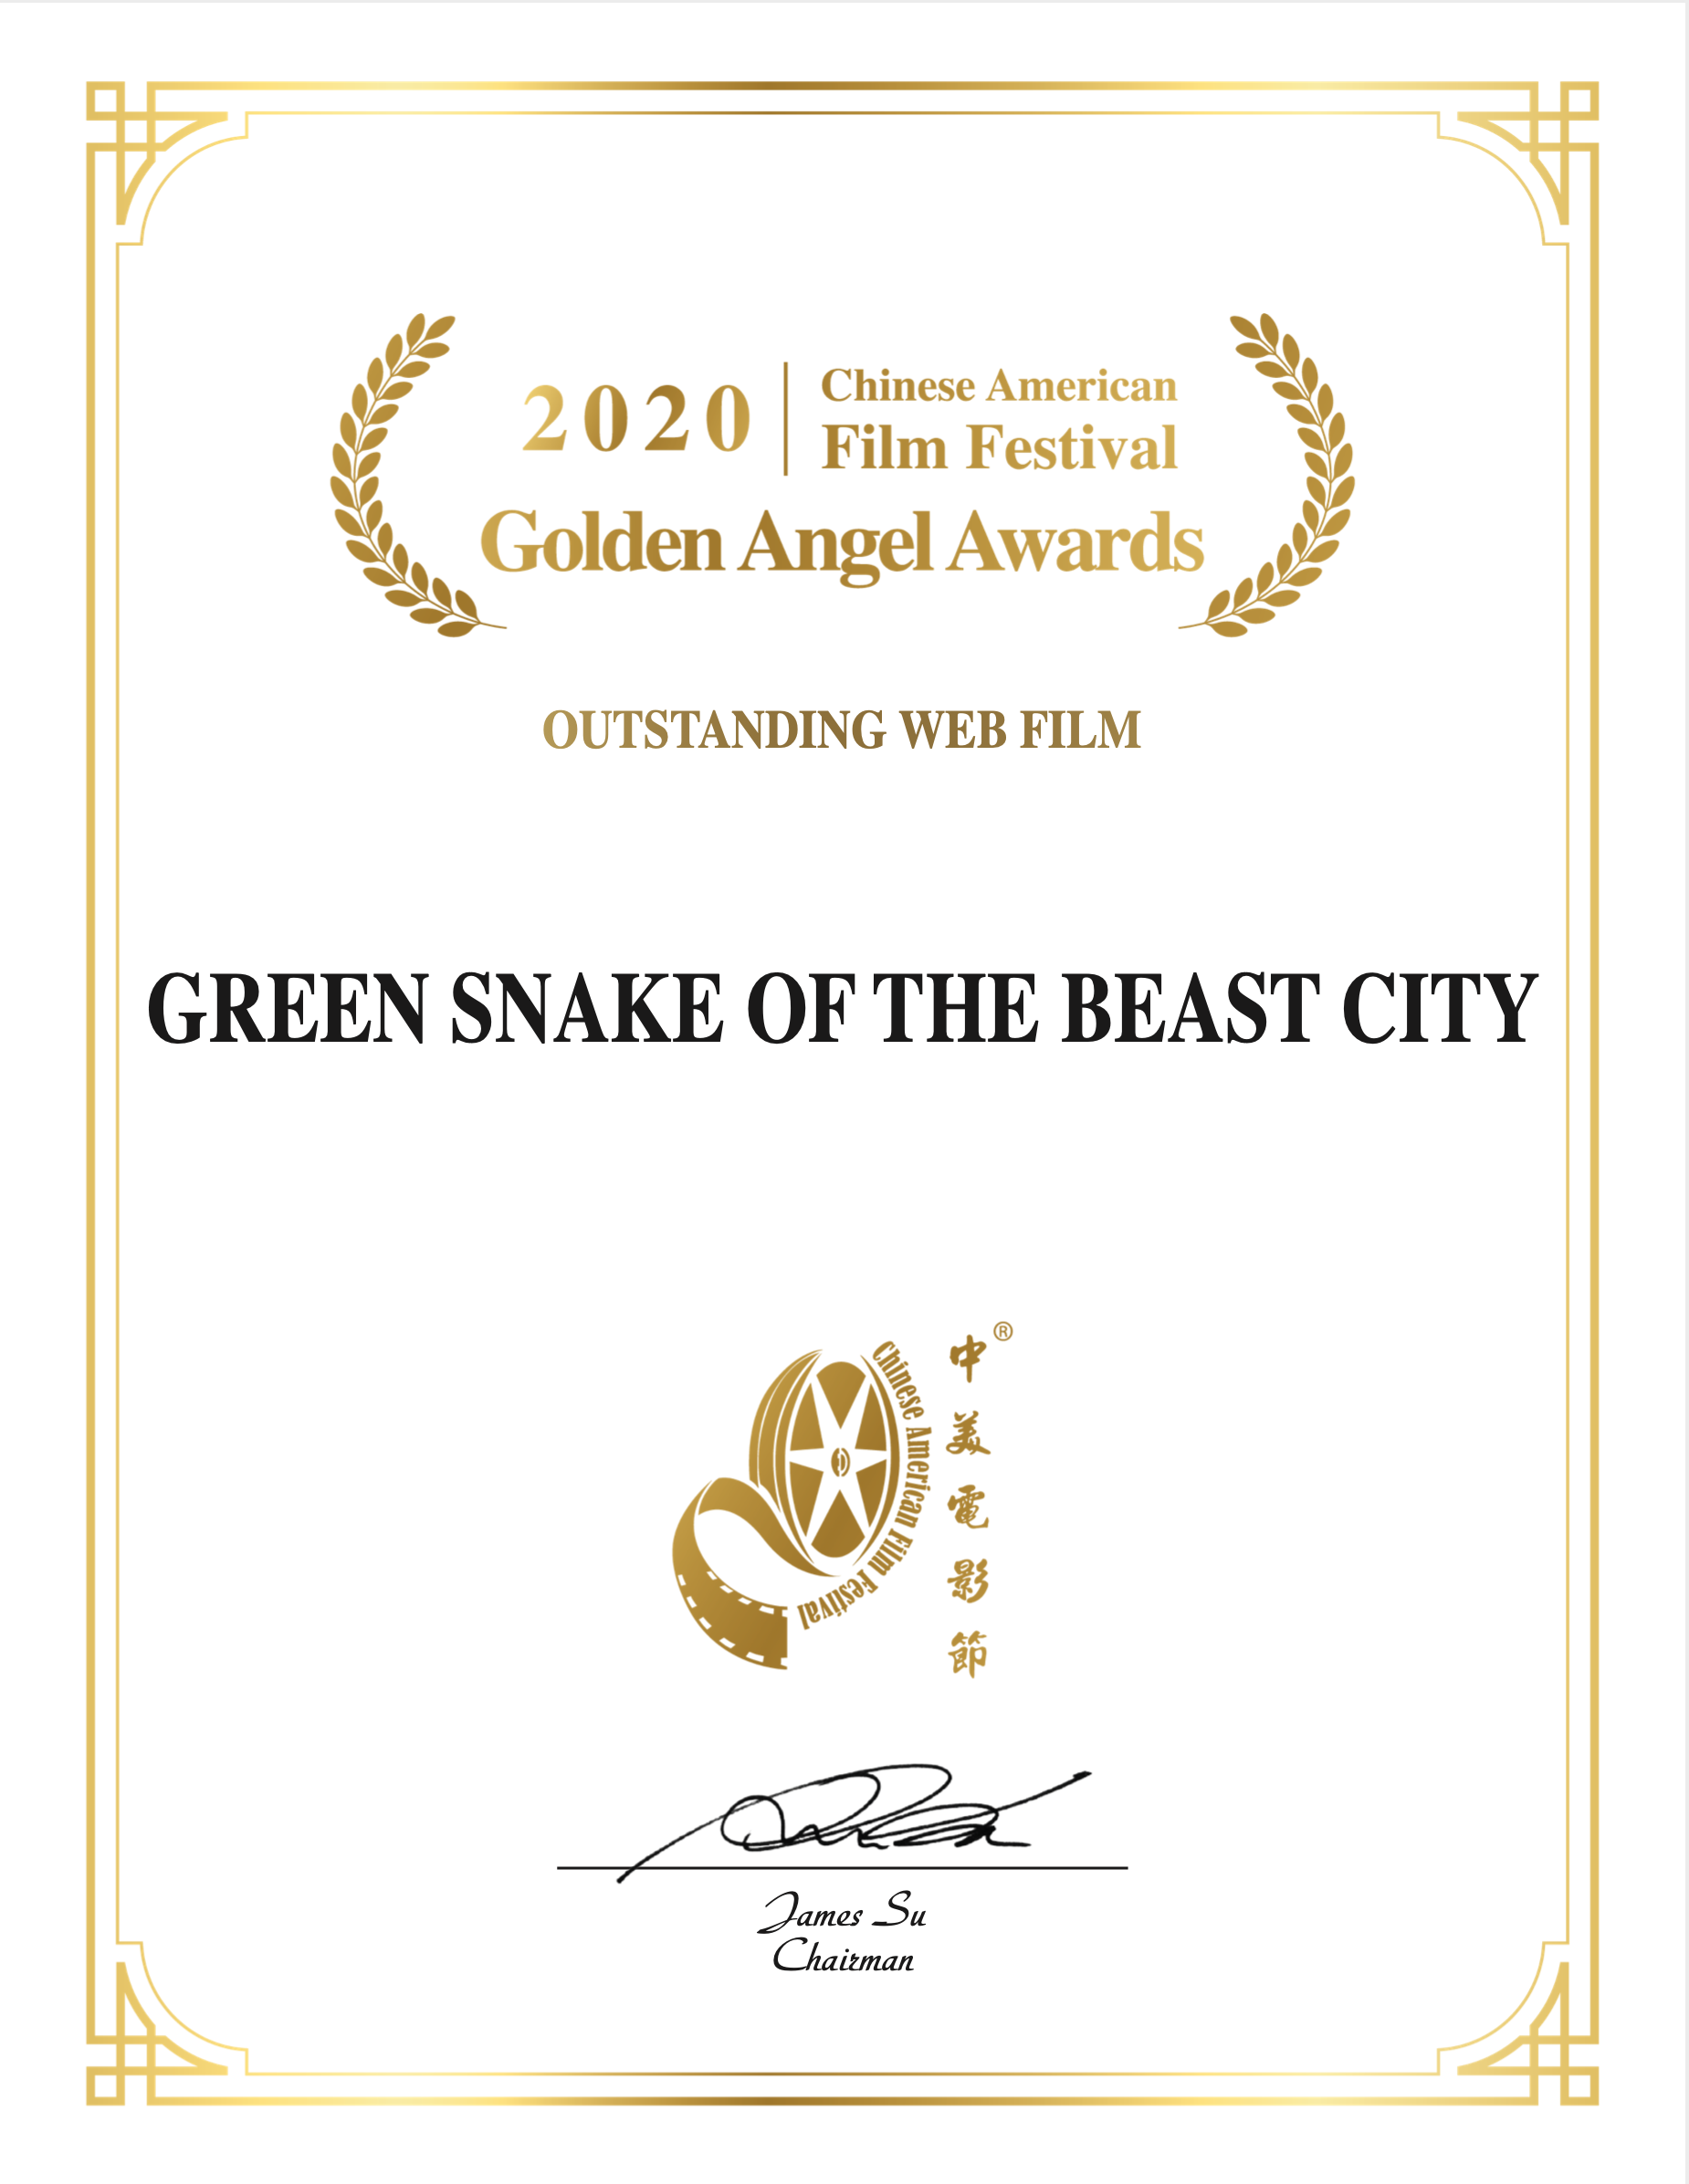 《青蛇之萬獸城》獲2020年中美電影節“金天使獎”年度優秀網絡電影